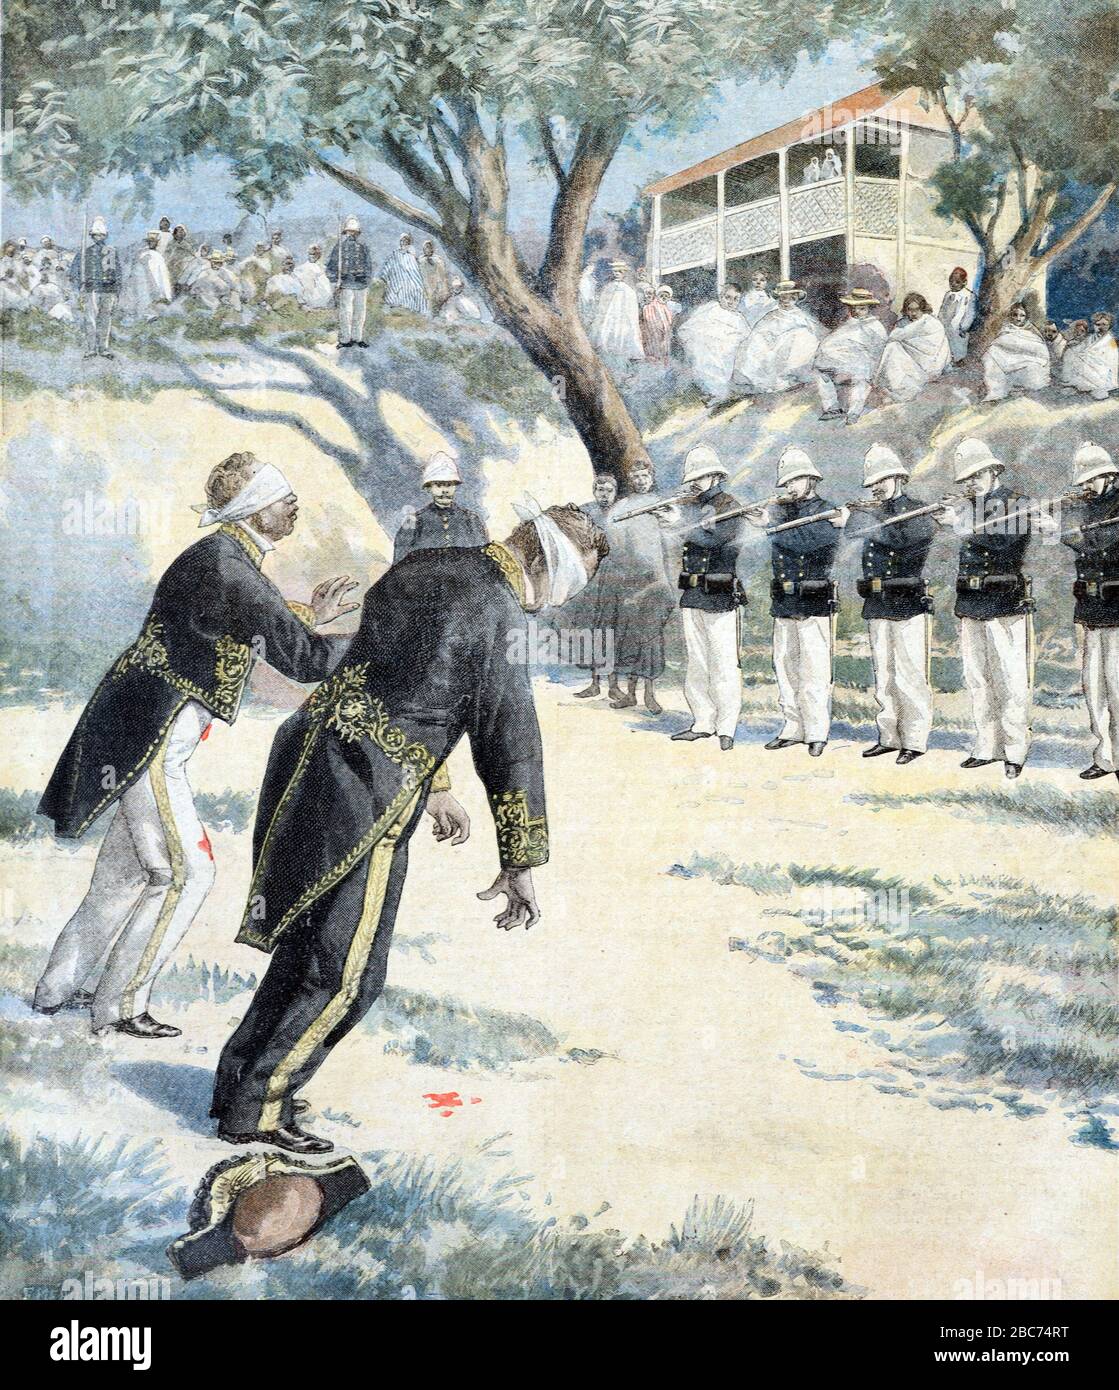 Esecuzione dei combattenti della resistenza da parte delle truppe francesi durante l'invasione francese o la guerra franco-Hova ad Antananarivo o Tananarive novembre 1896. Illustation di incisione da novembre 1896. Foto Stock